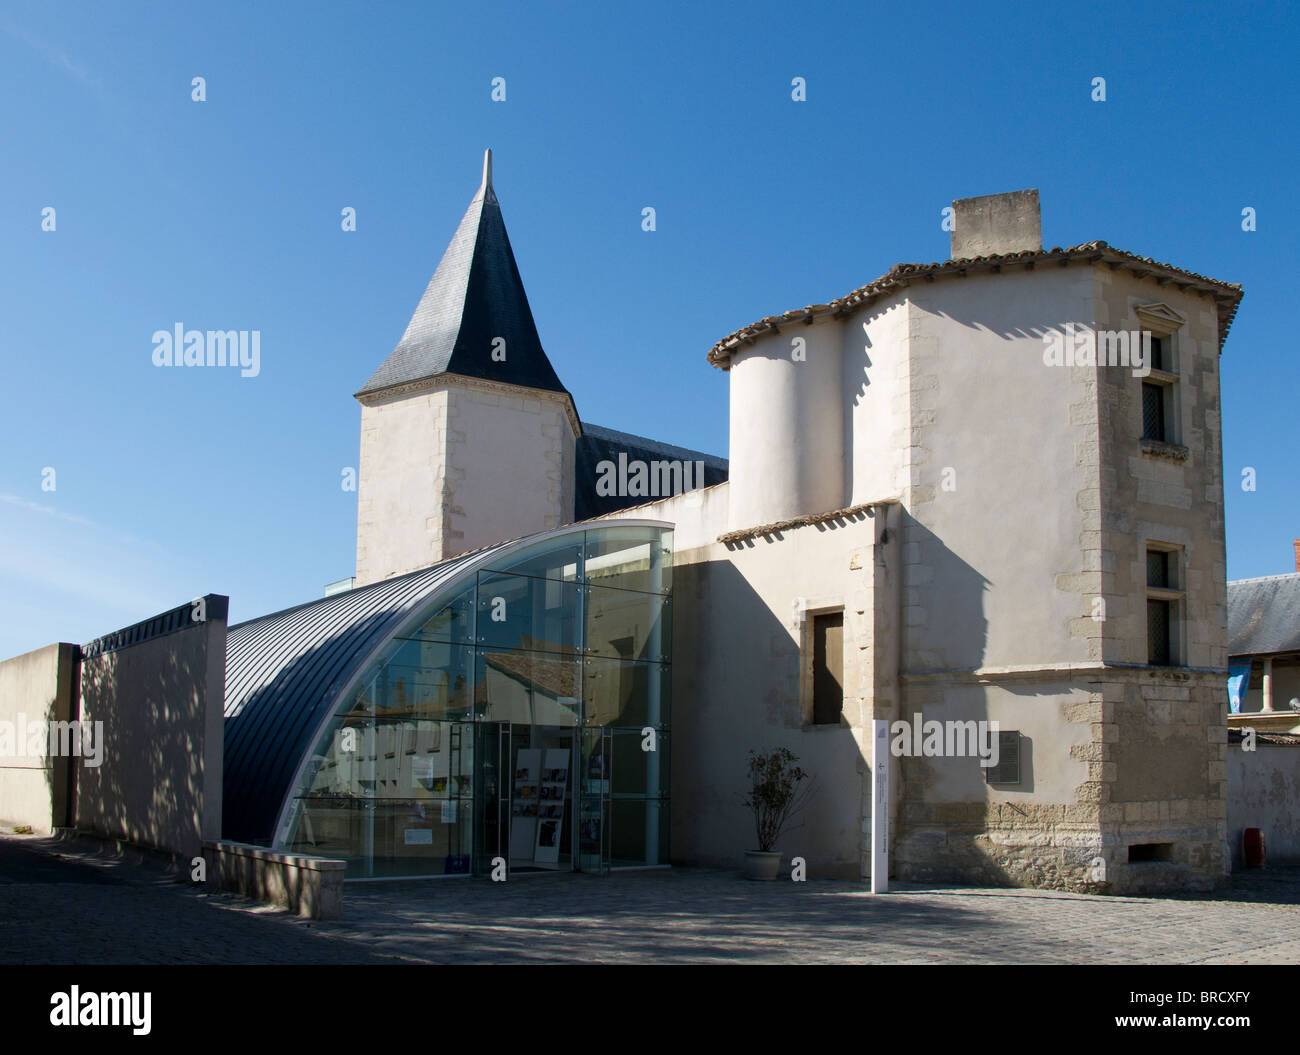 The Musee Ernest Cognacq museum in St Martin de Re on the Ile de Re, France Stock Photo